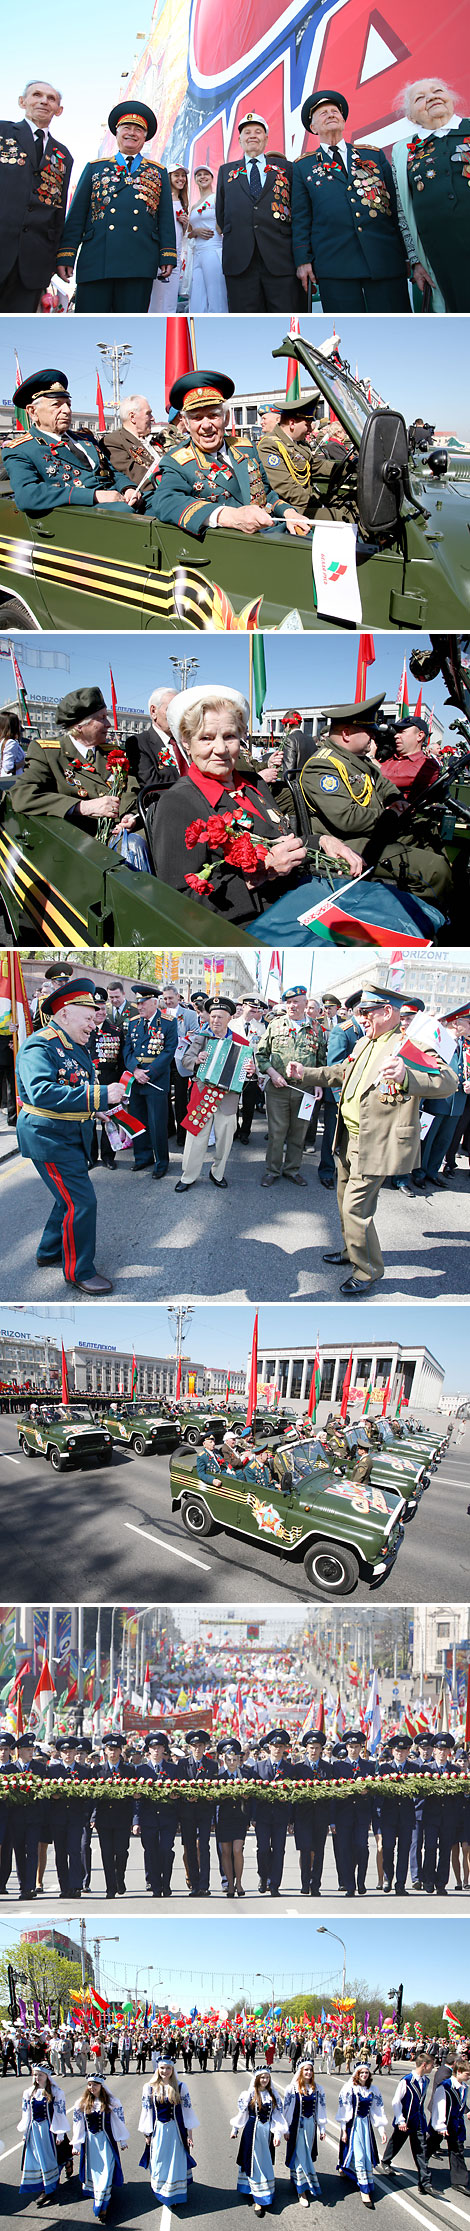 2013 год. Торжественное шествие в честь Дня Победы